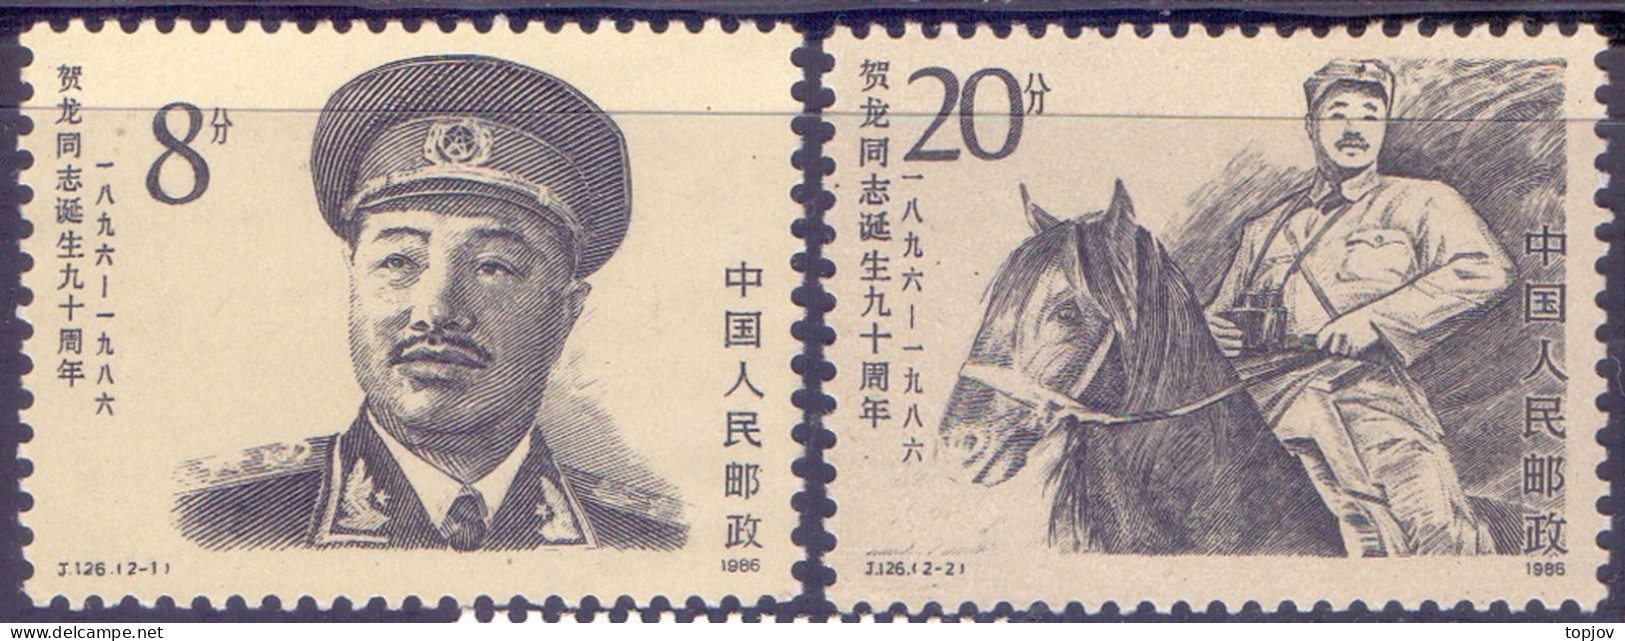 CHINA -  HE LONG - HORSE J.126 - **MNH - 1986 - Kranichvögel